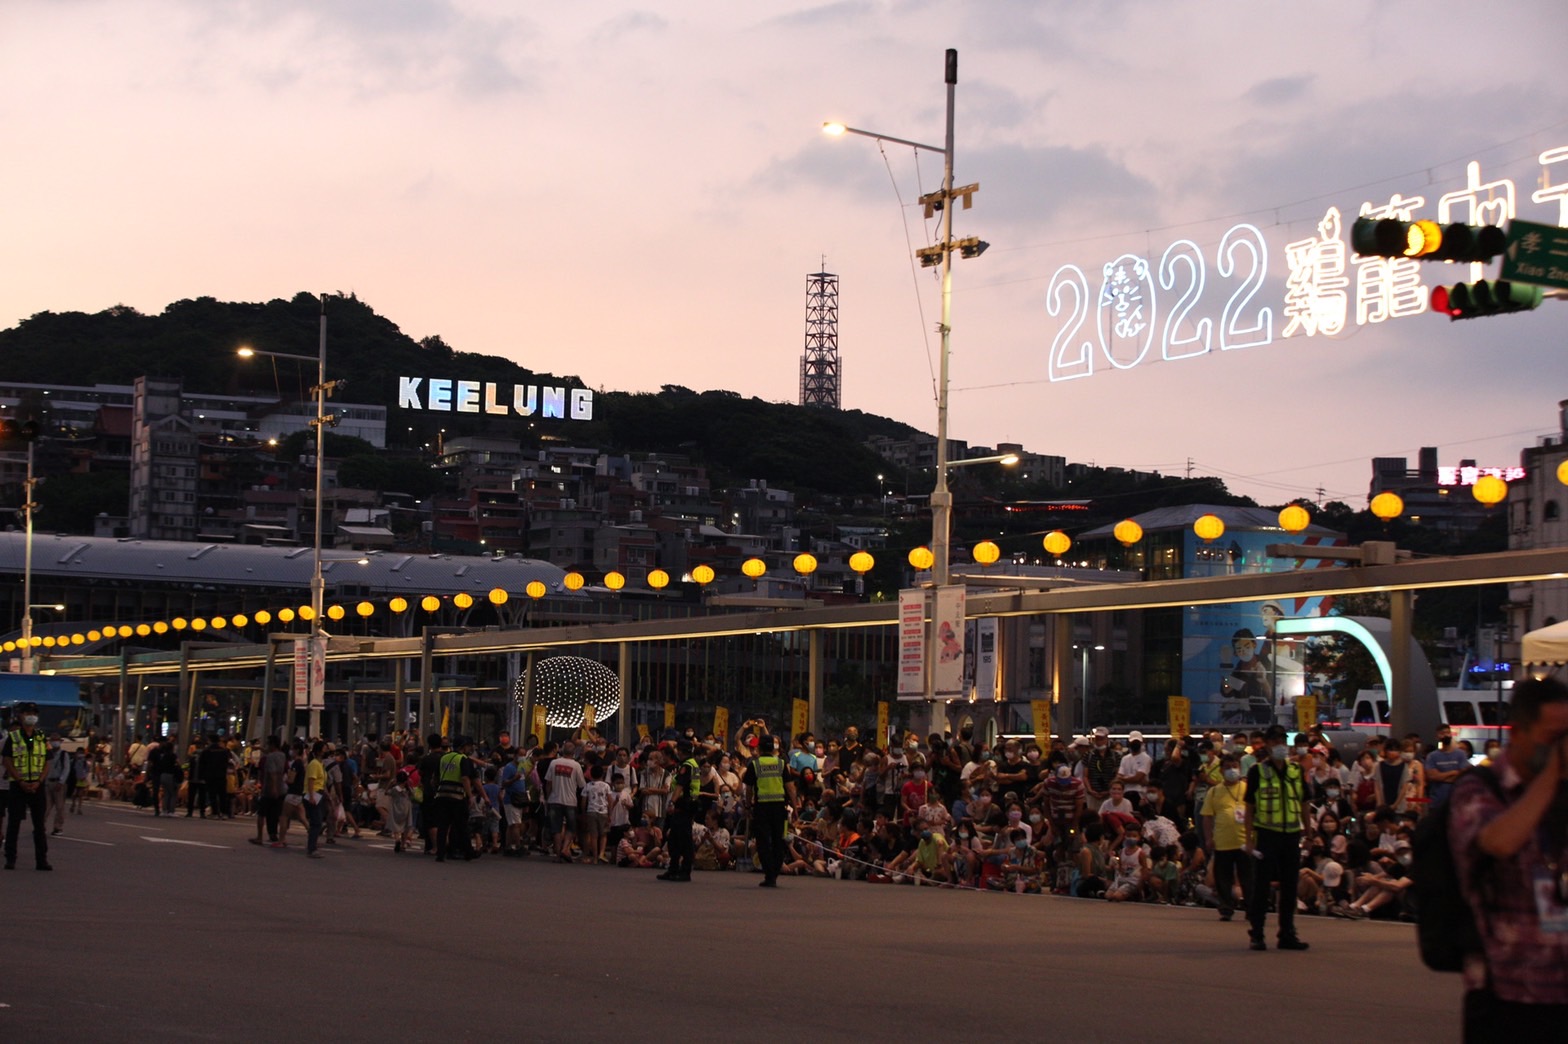 鷄籠中元祭放水燈花車遊行吸引許多市民夾道觀看 (1)